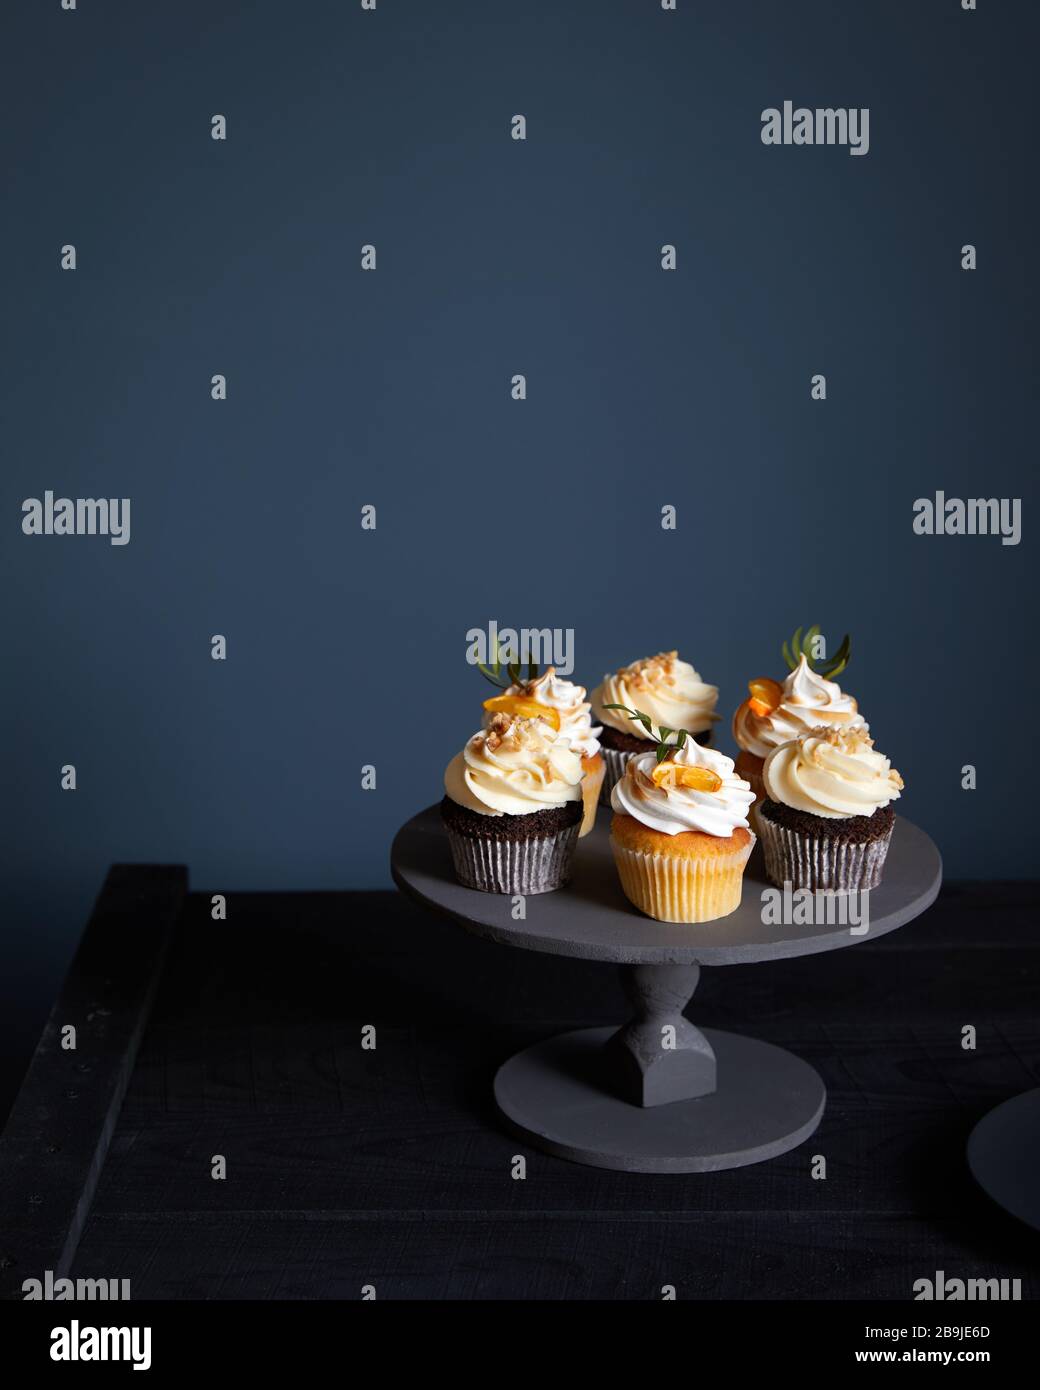 Cupcake al cioccolato e al limone assortiti su sfondo scuro. Spazio libero per il testo Foto Stock